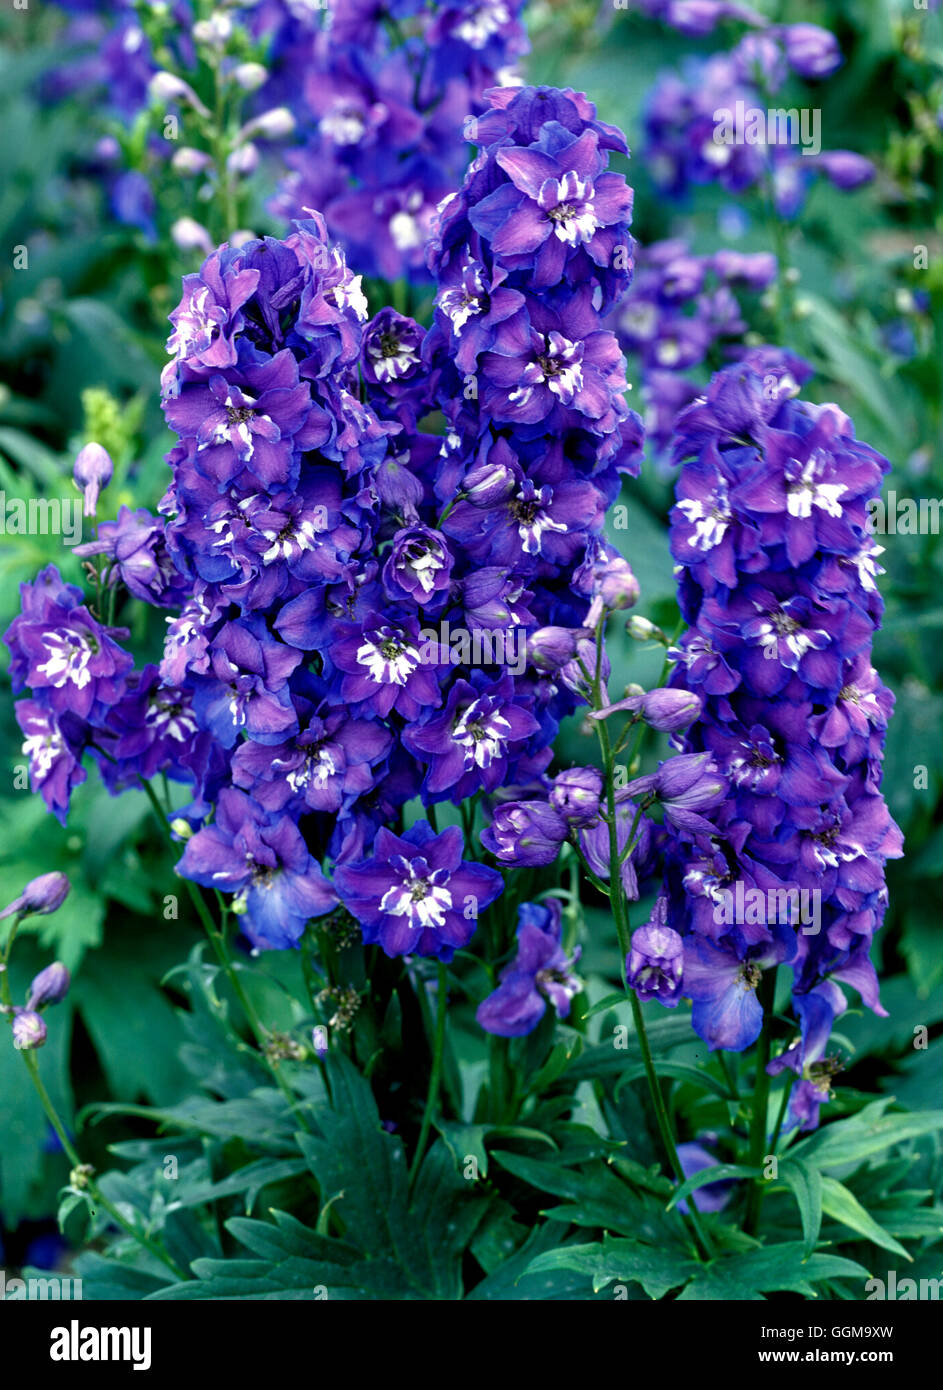 Custode Delphinium Series - Inizio blu (fiori recisi varietà) Data: 13/10/2008 Ref: UMW 122062 0004 foto Foto Stock